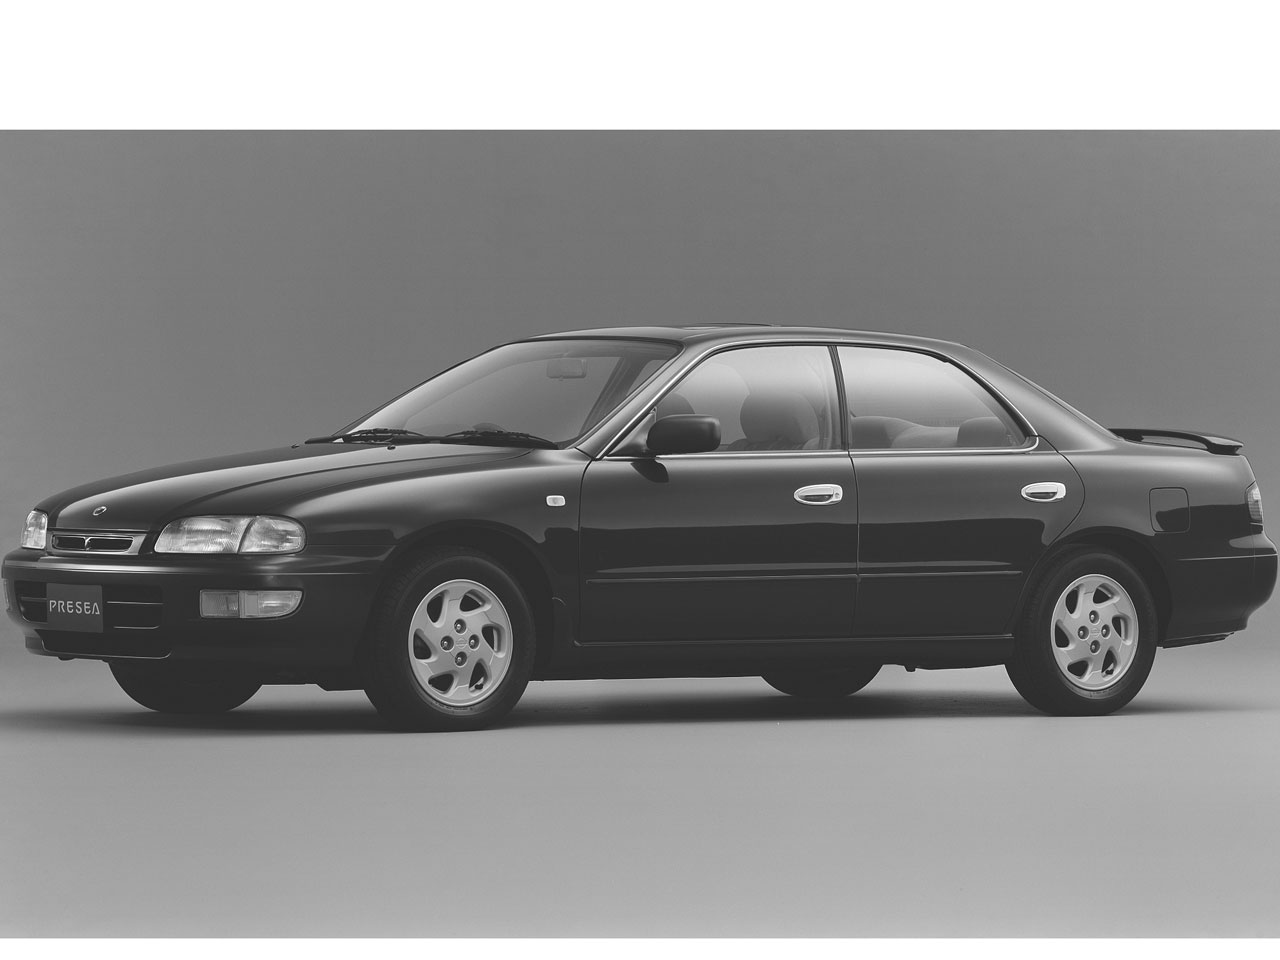 日産 プレセア 1995年モデル 新車画像